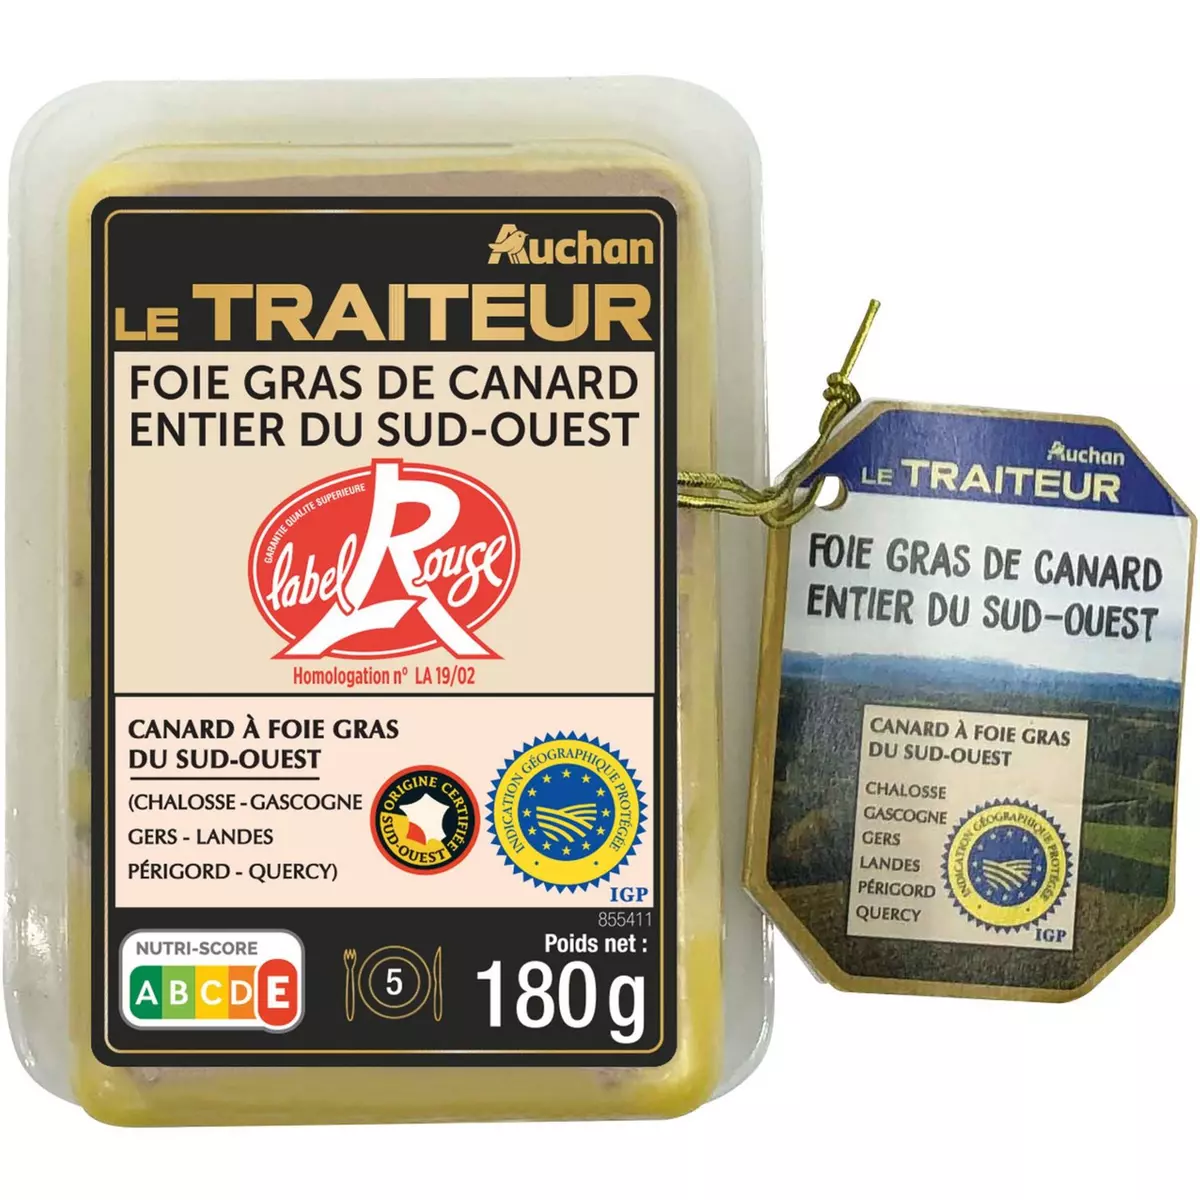 AUCHAN LE TRAITEUR Foie gras de canard entier du sud ouest Label rouge IGP 5 portions 180g